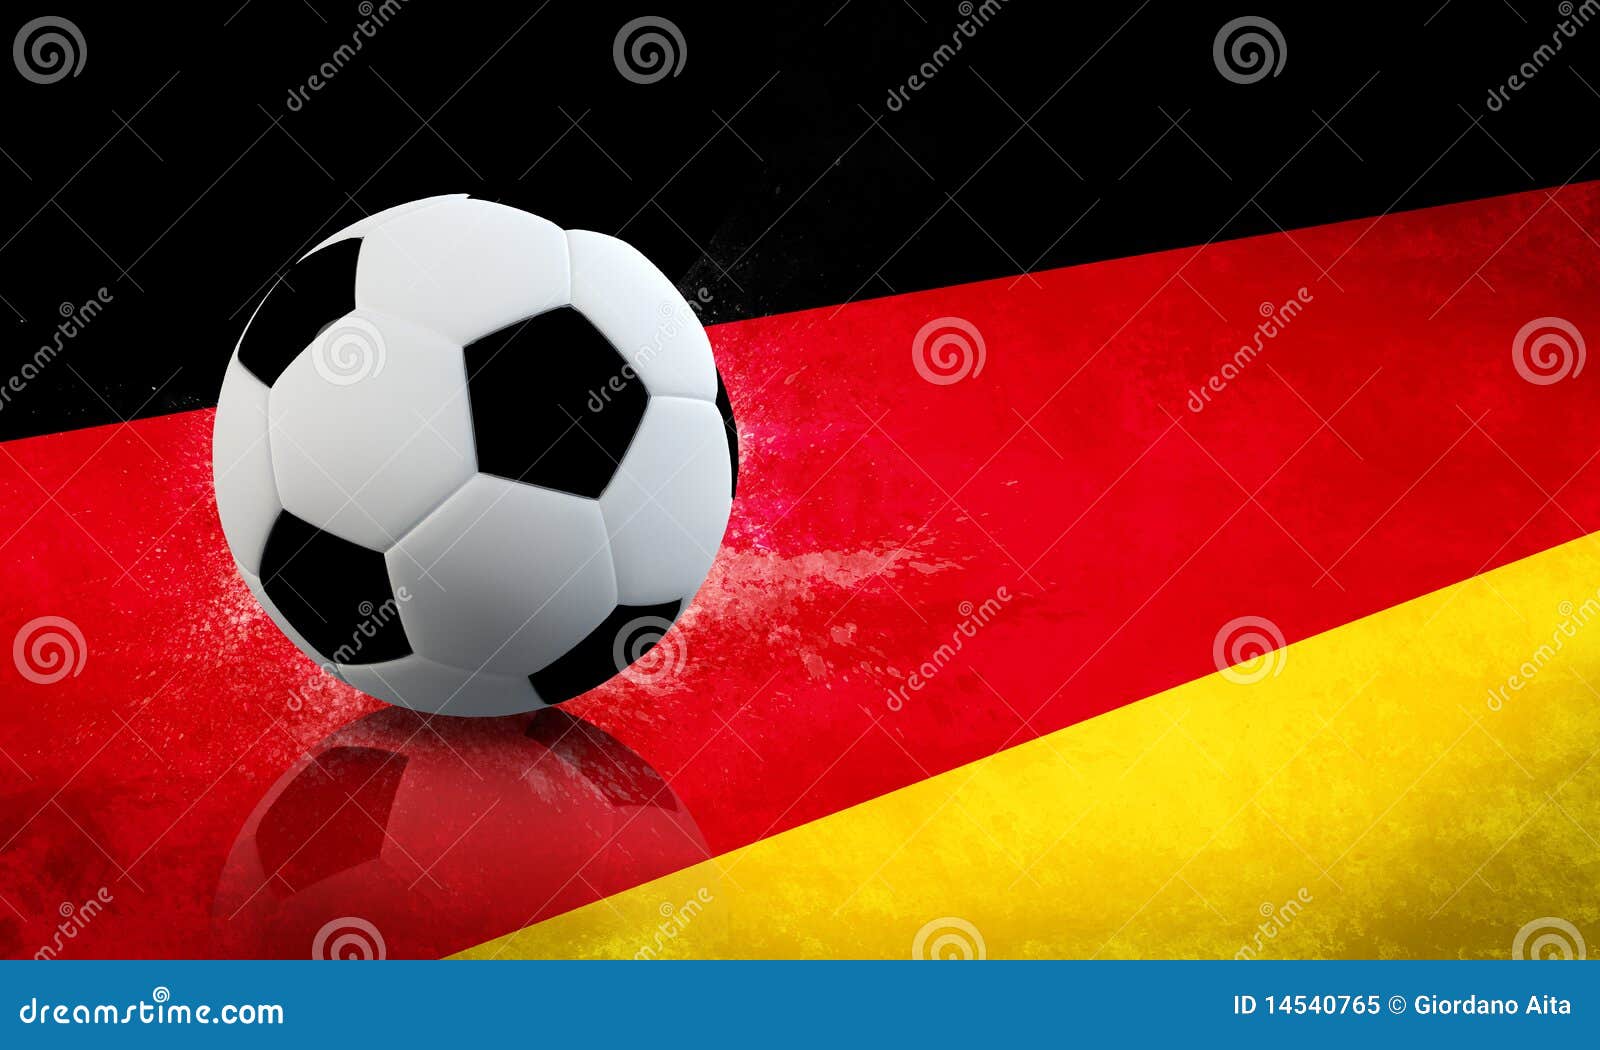 Про немецкий футбол